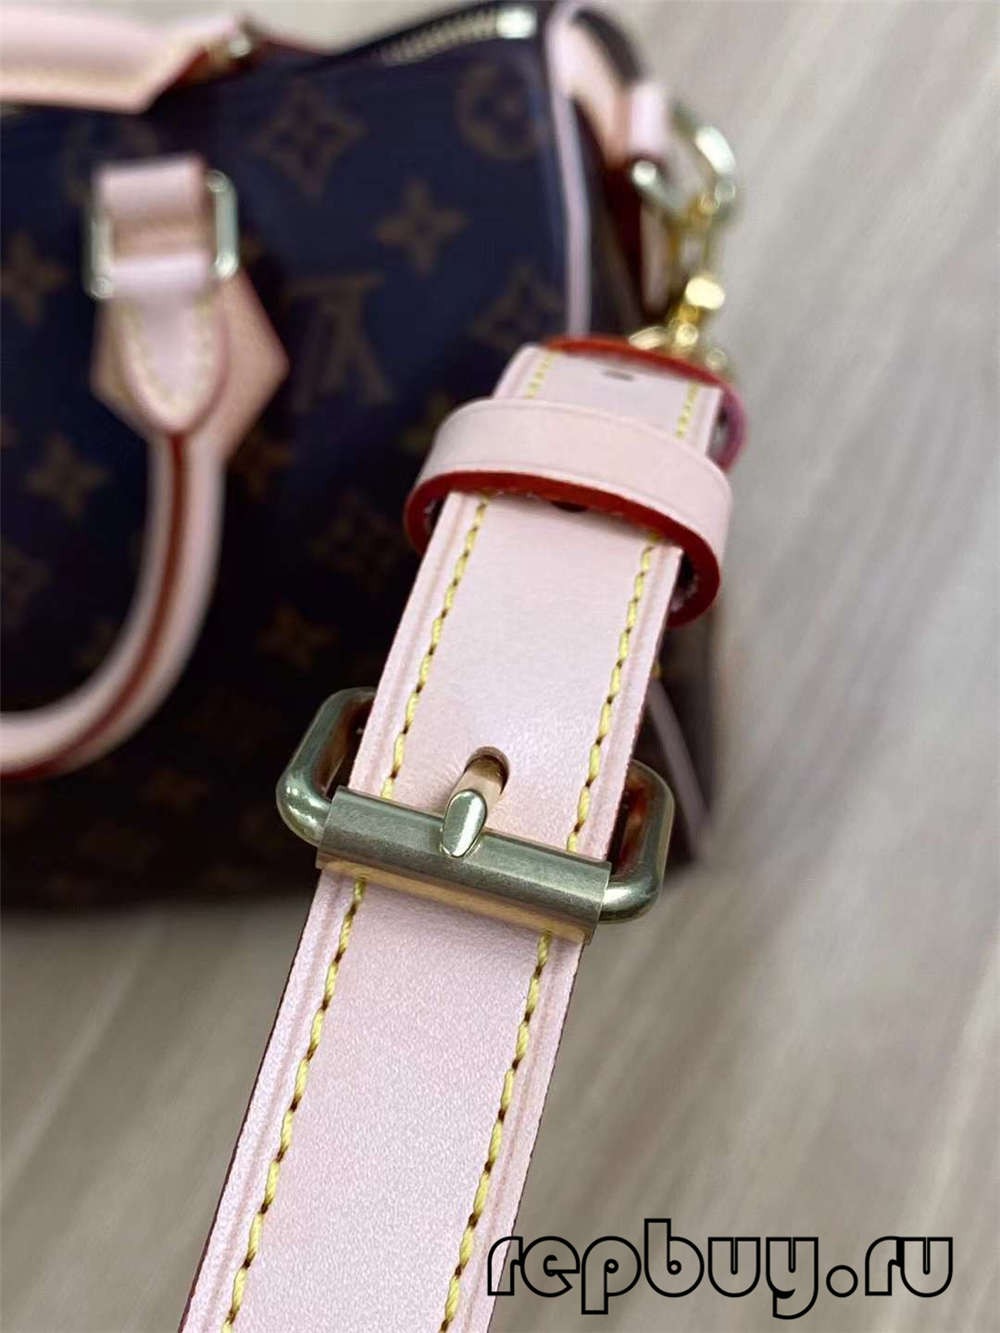 Louis Vuitton M41113 Speed 25 Top Replica Handbags Details (2022 Latest)-Best Quality Fake designer Bag Review, Replica designer bag ru